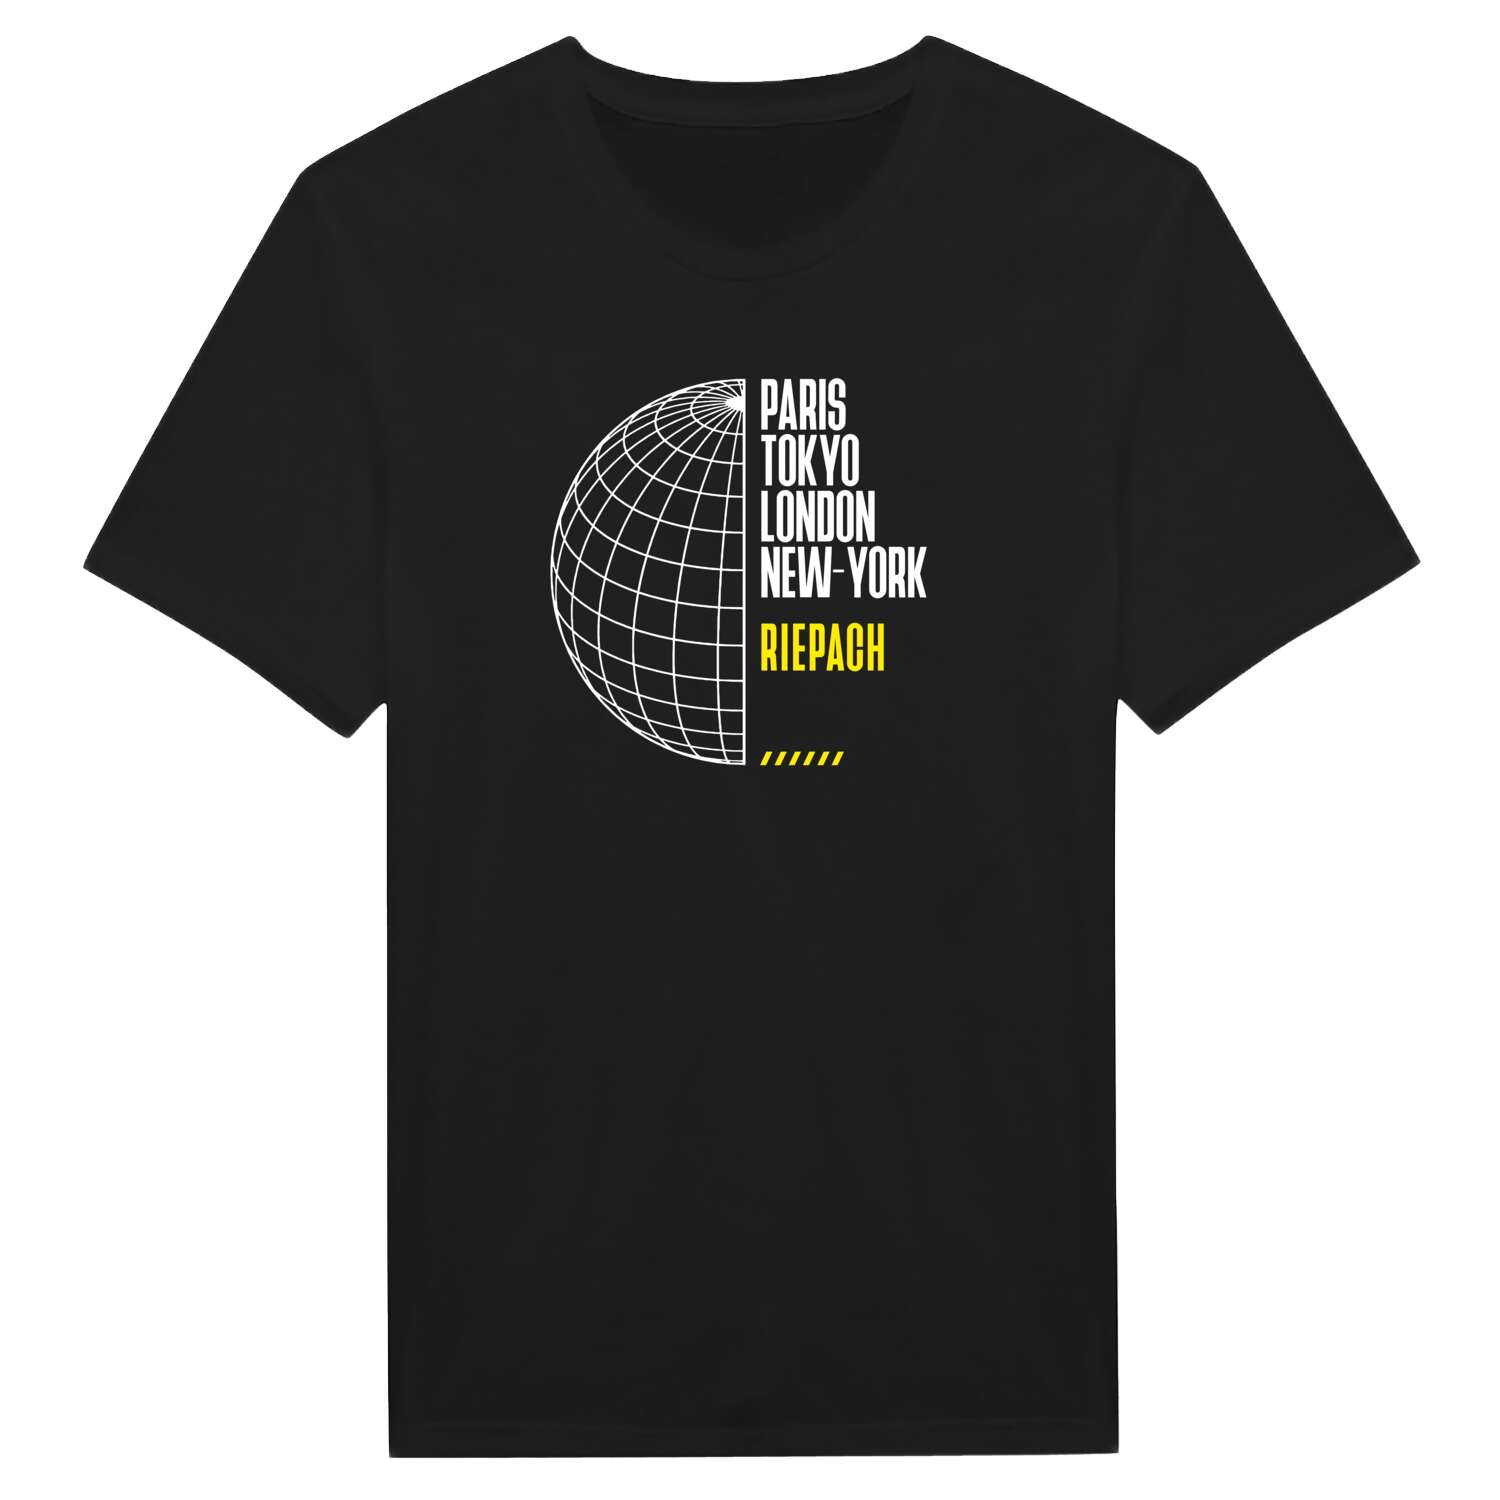 Riepach T-Shirt »Paris Tokyo London«